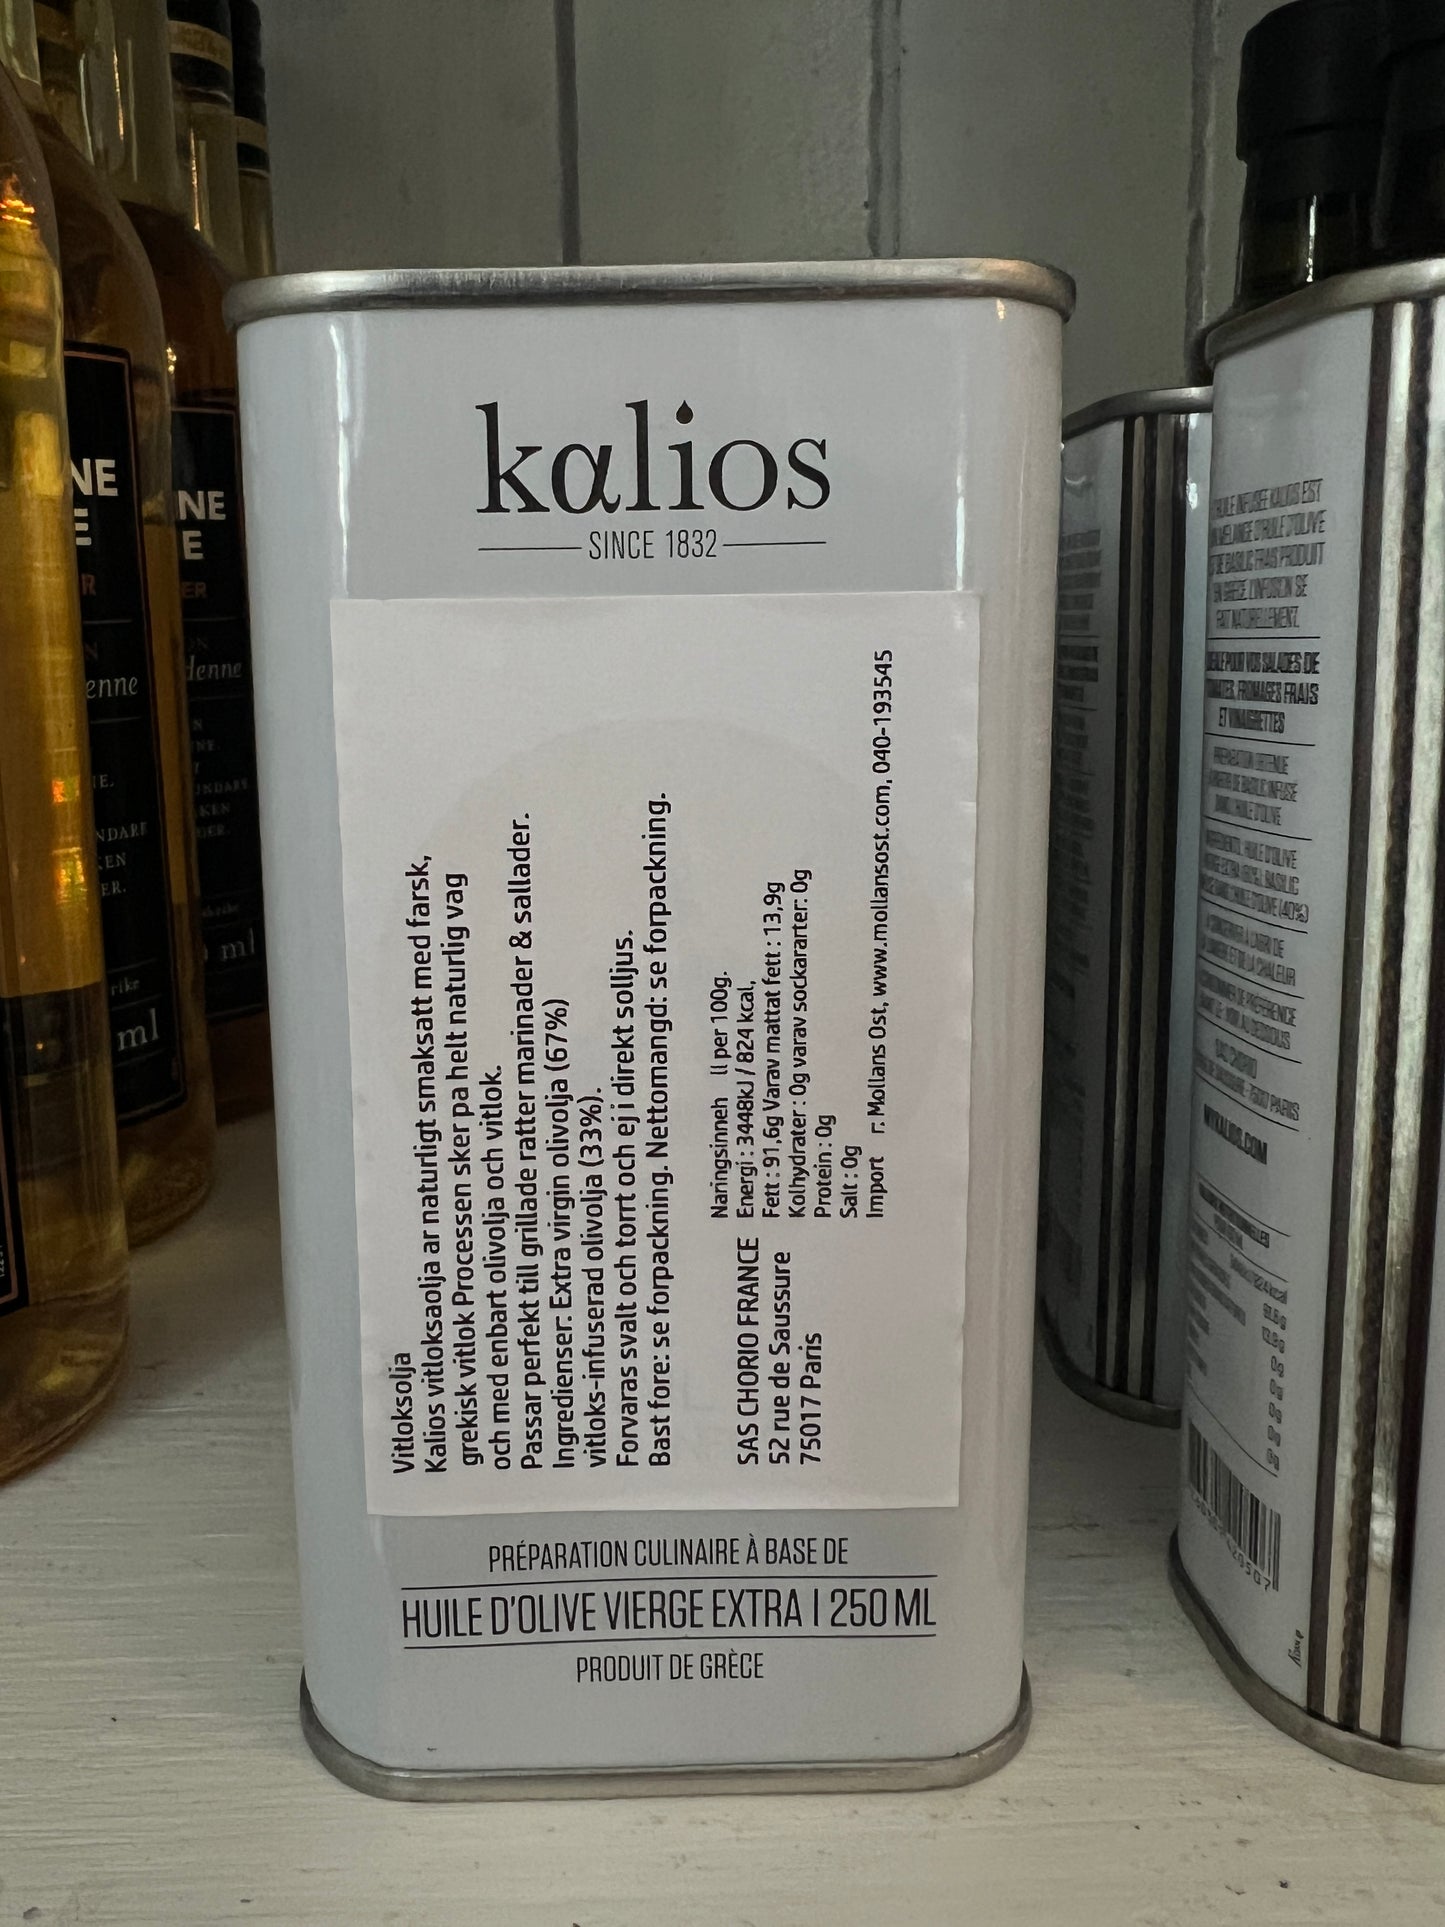 Kalios olivolja med smak av vitlök